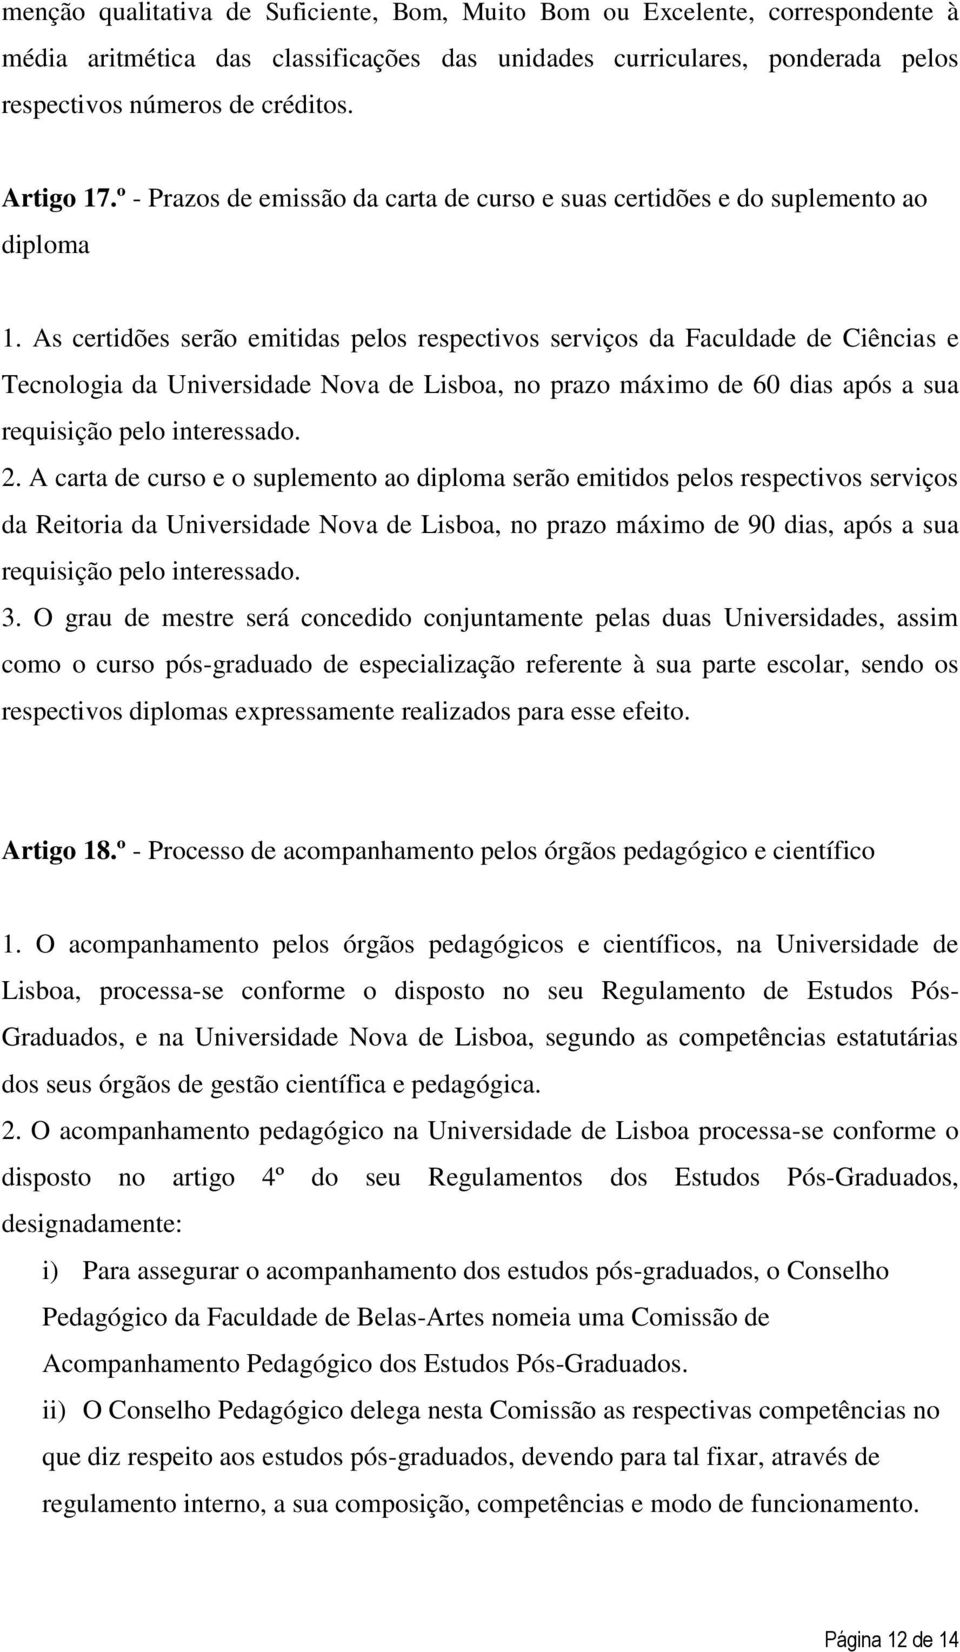 As certidões serão emitidas pelos respectivos serviços da Faculdade de Ciências e Tecnologia da Universidade Nova de Lisboa, no prazo máximo de 60 dias após a sua requisição pelo interessado. 2.